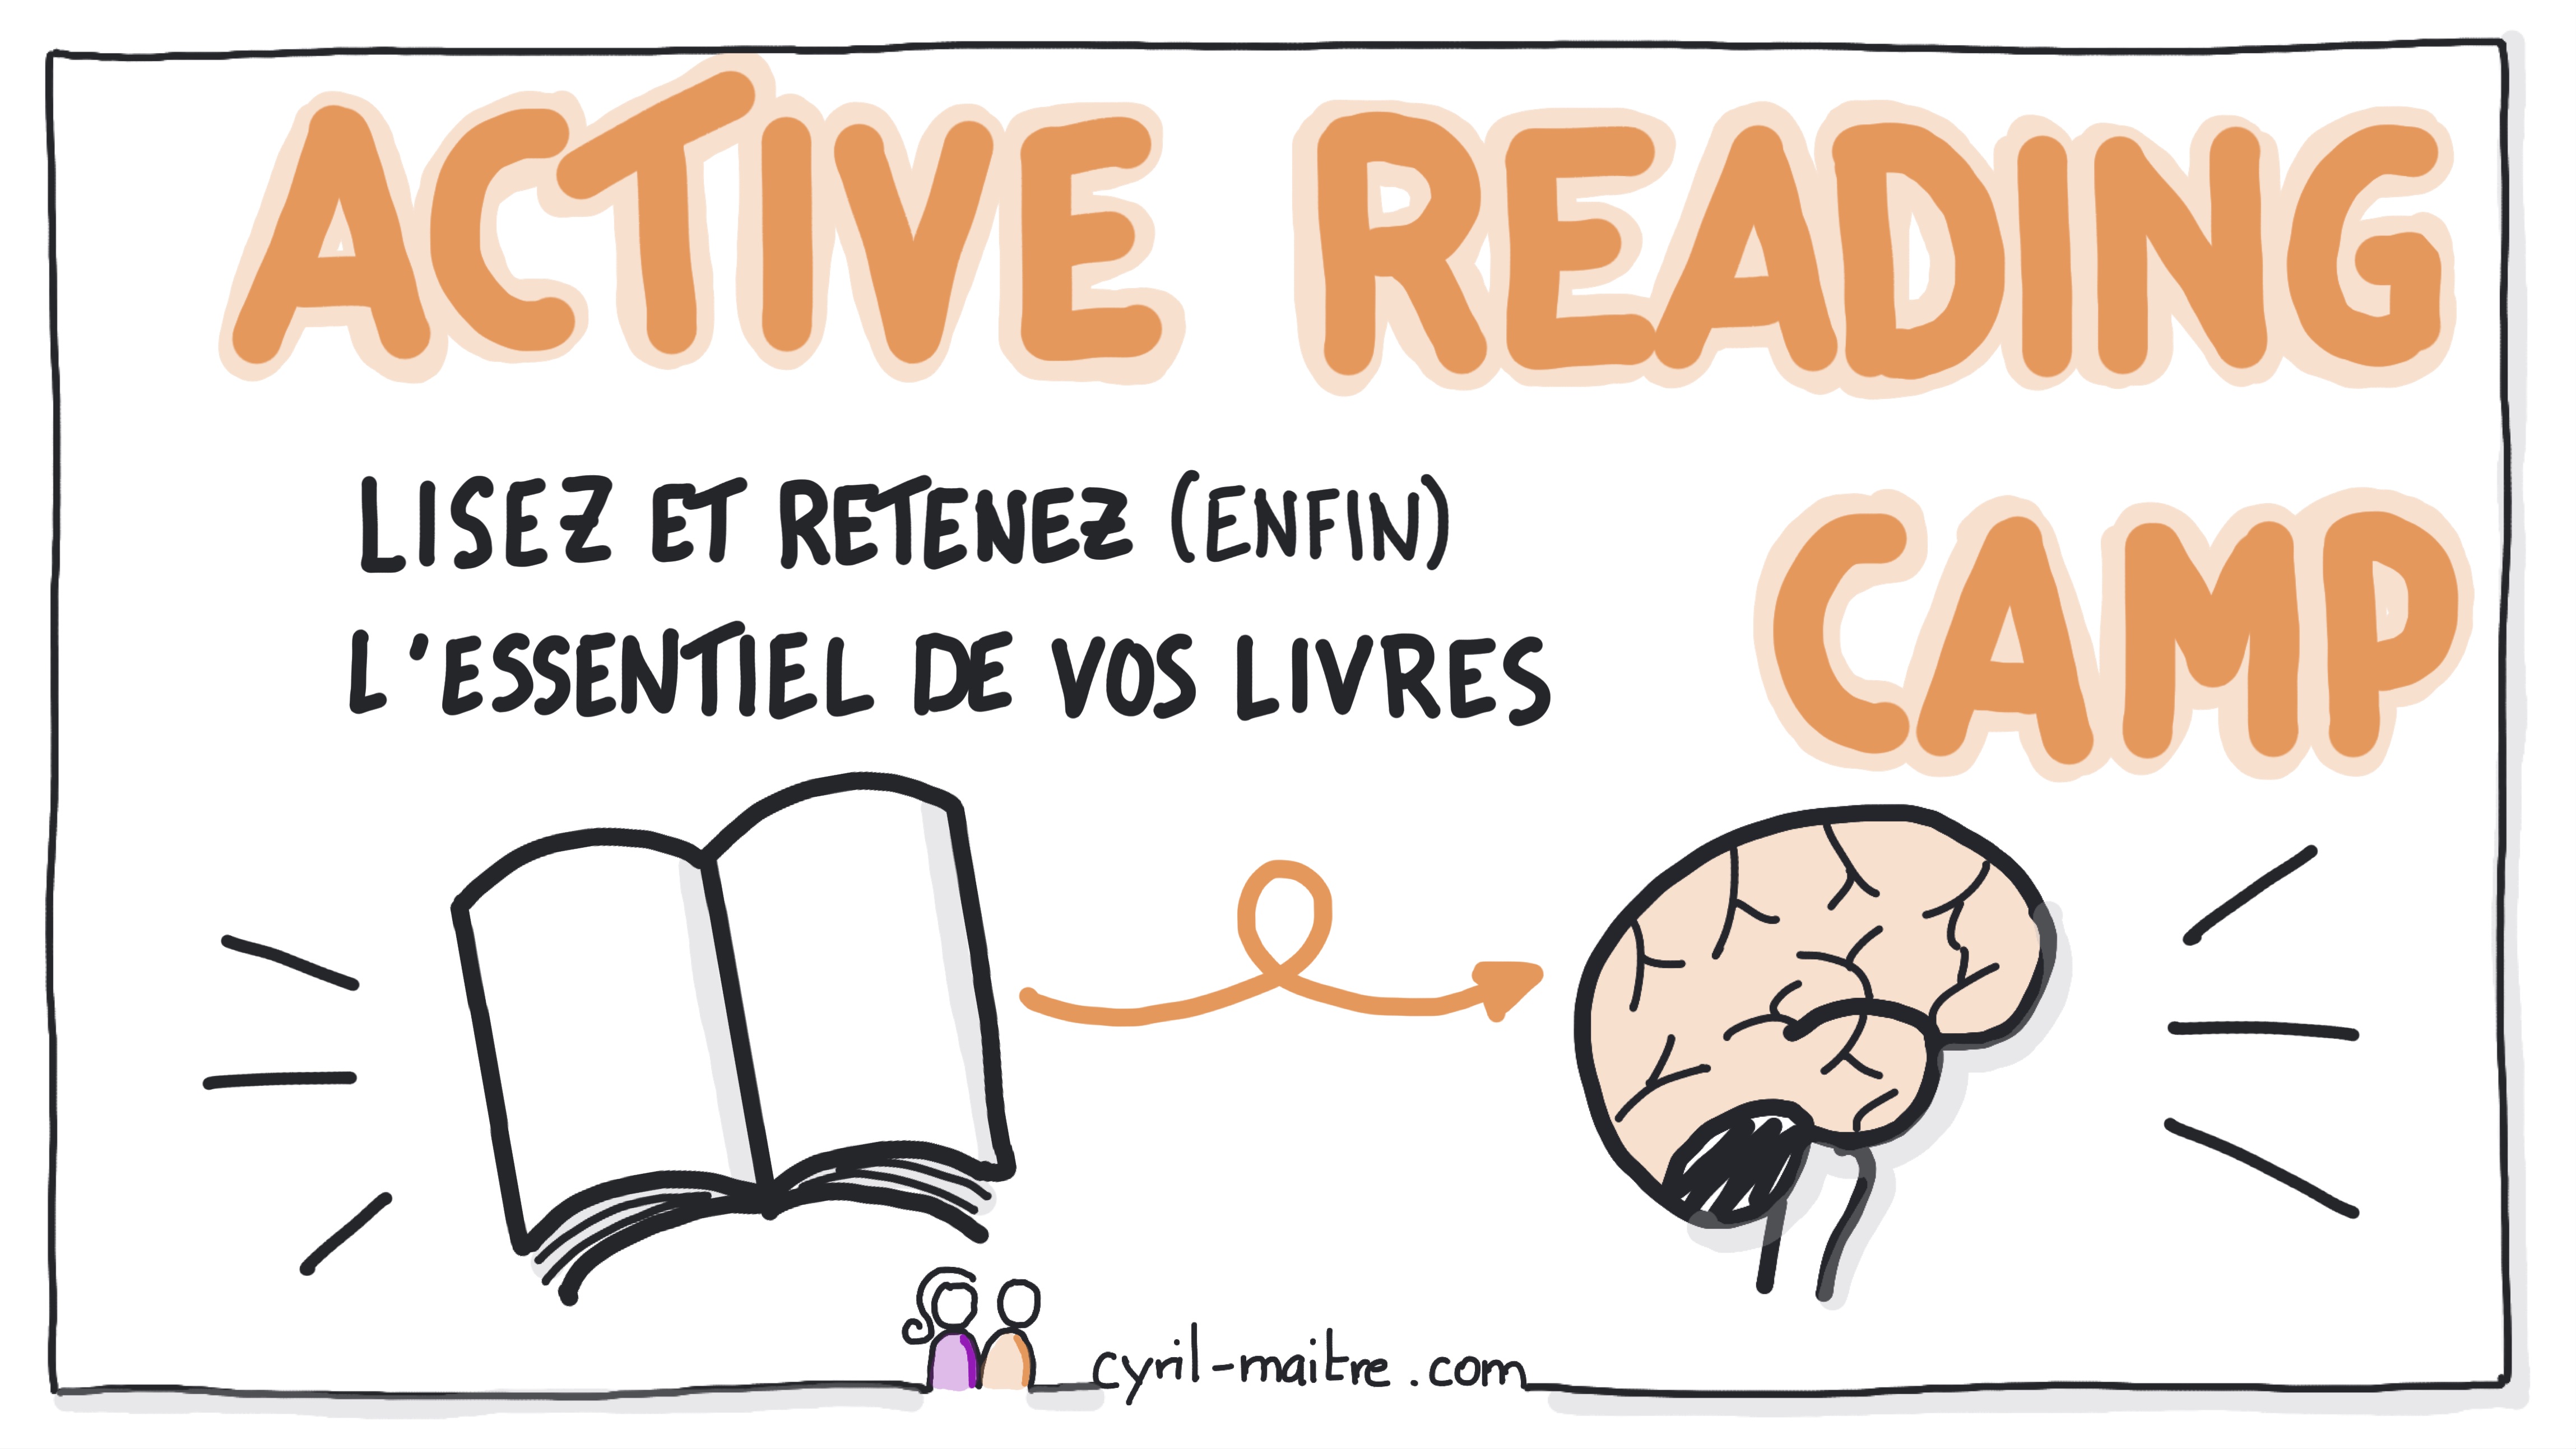 ACTIVE READING CAMP : Retenez enfin ce que vous lisez !